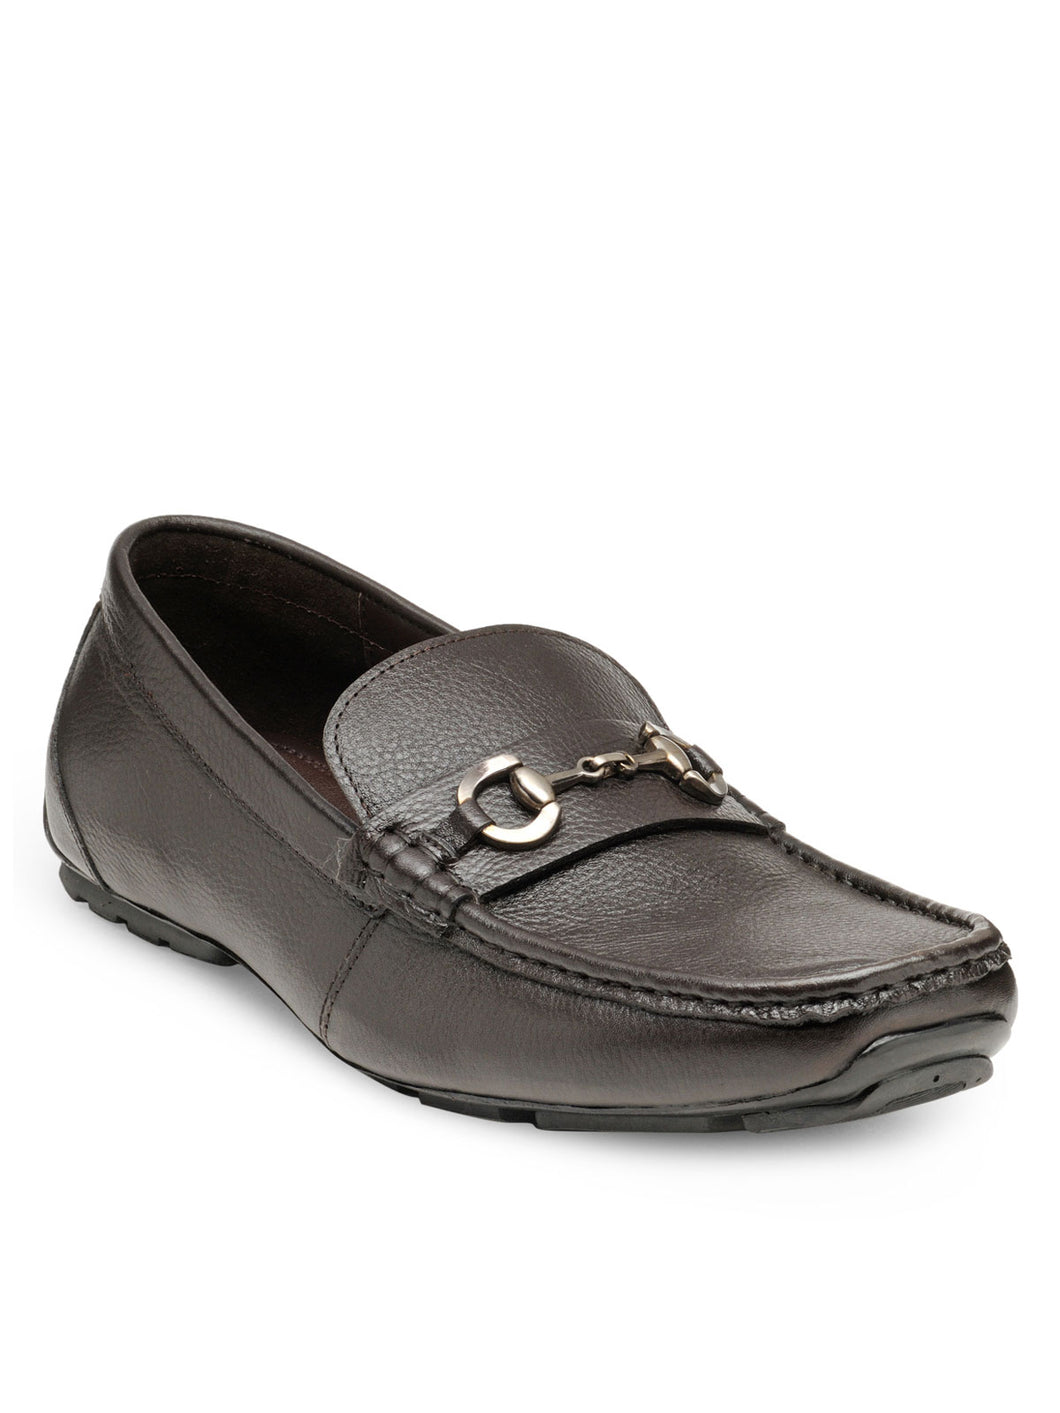 Teakwood Leather Men's Brown Slip-ons Shoes